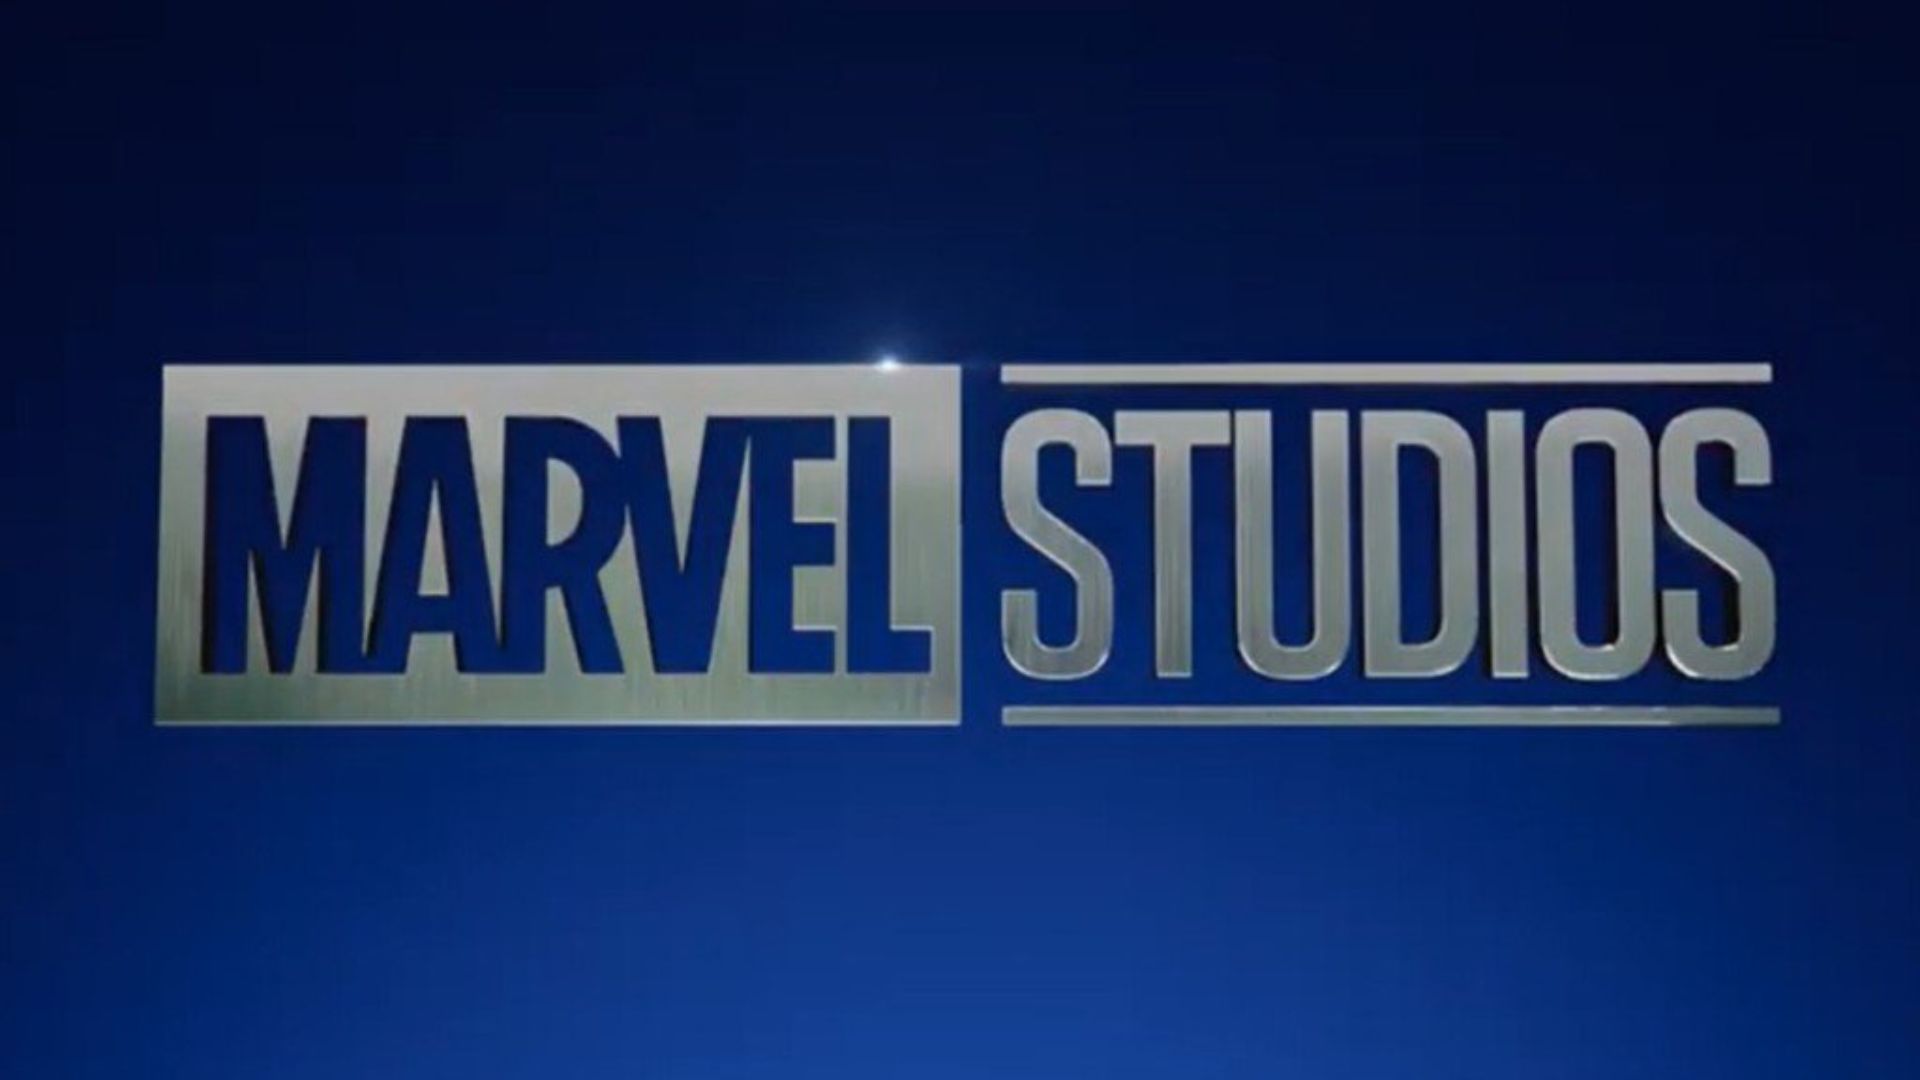 De acordo com site, Marvel Studios começa reformulação criativa após fracassos de bilheteria